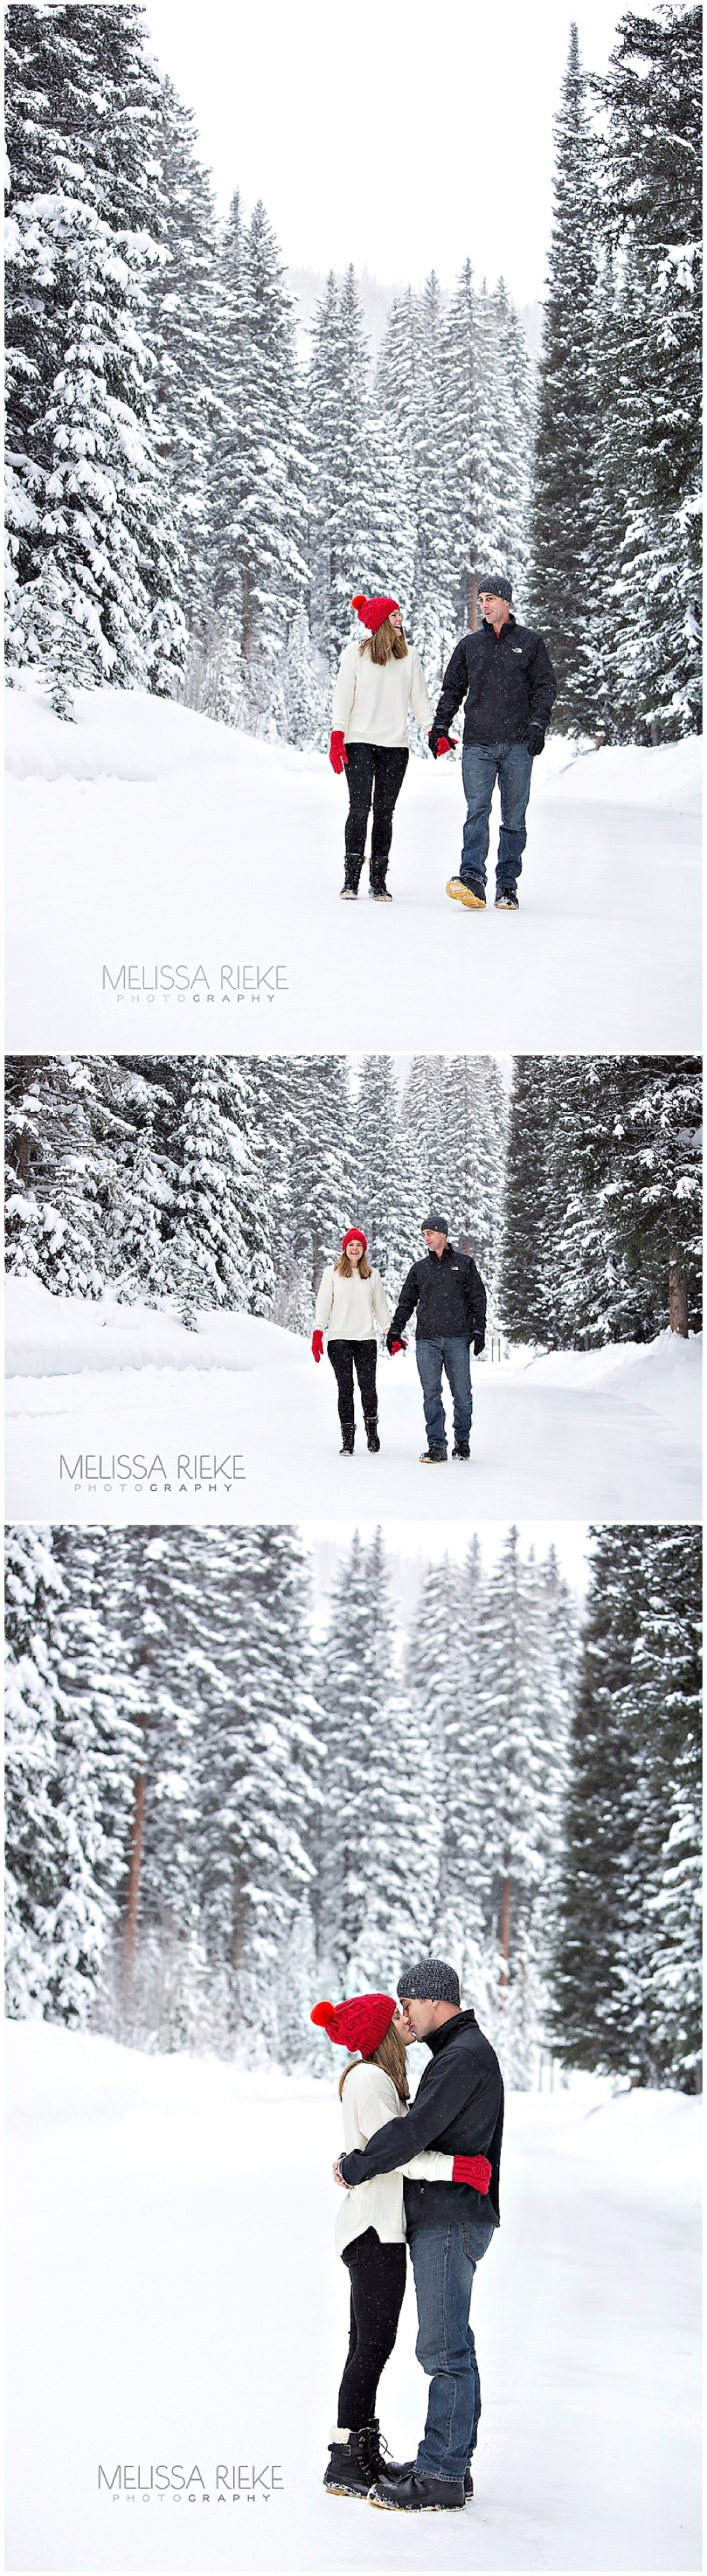 Winter Park Colorado Family Photos | Melissa Rieke Photography